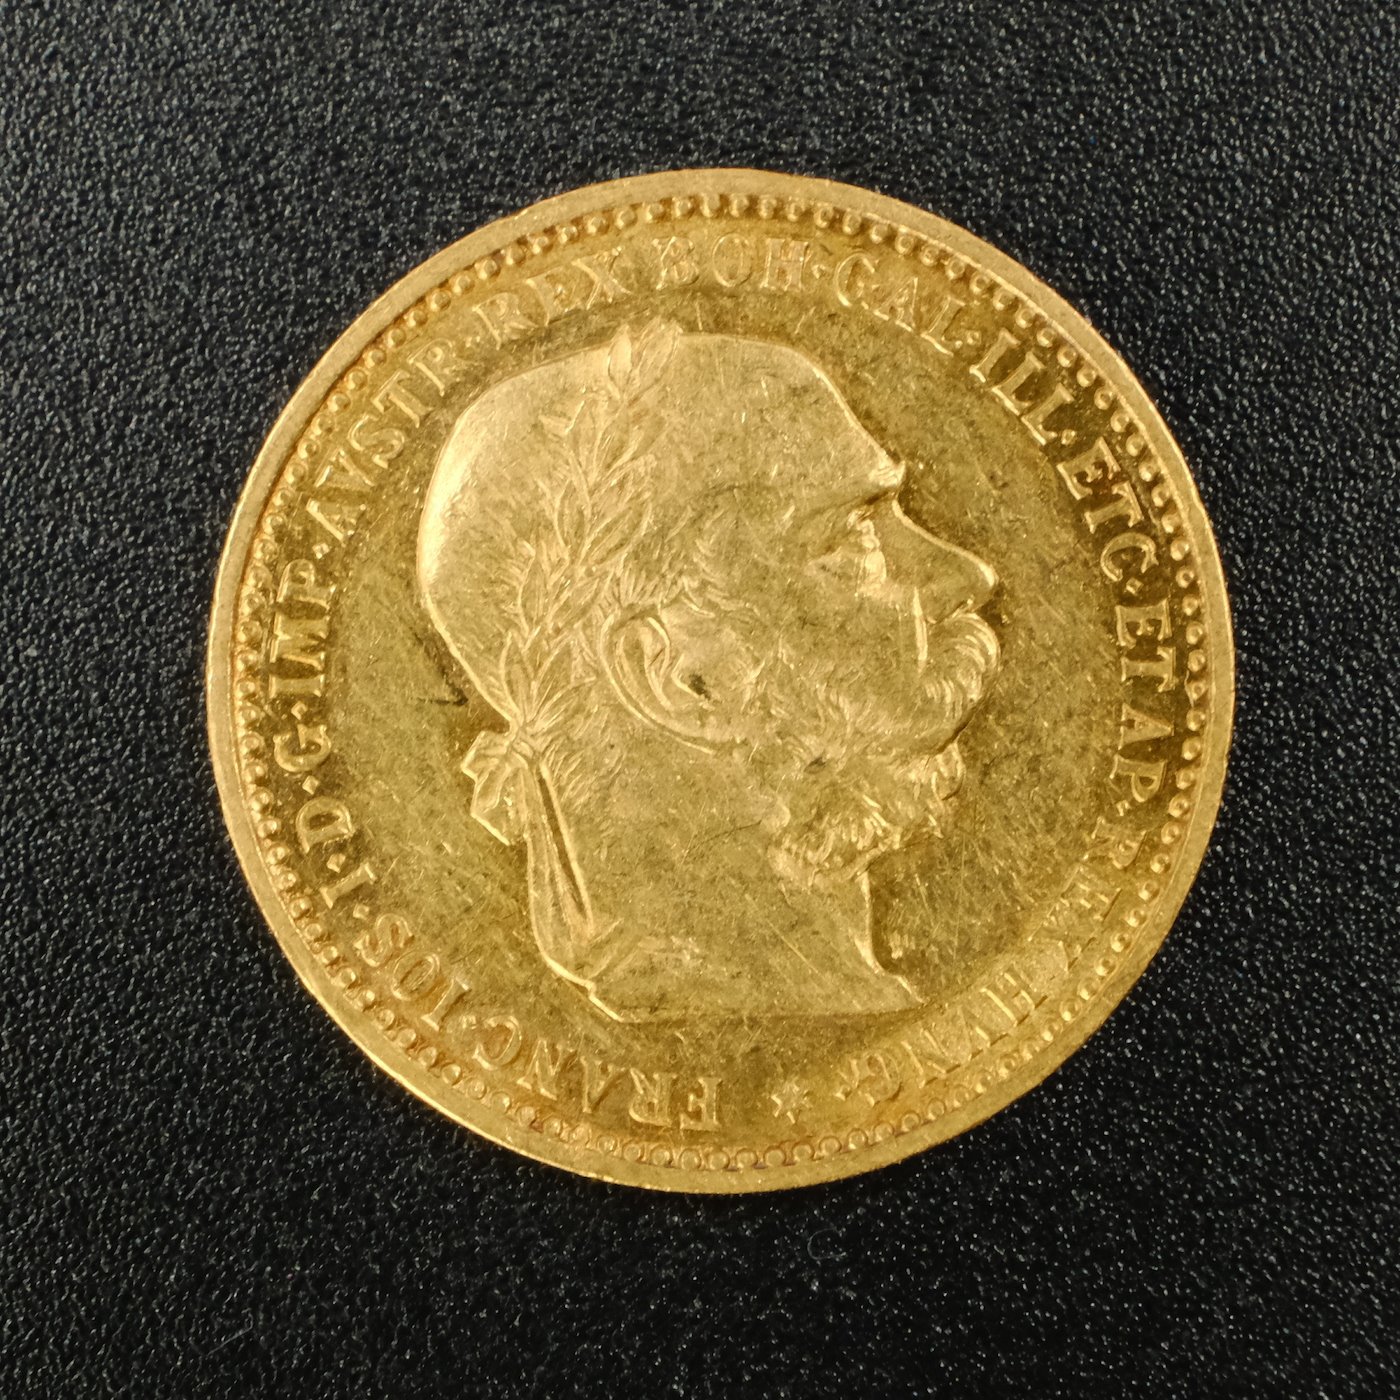 Mince - Rakousko Uhersko zlatá 10 Koruna 1897 rakouská,  zlato 900/1000, hrubá hmotnost mince 3,387g